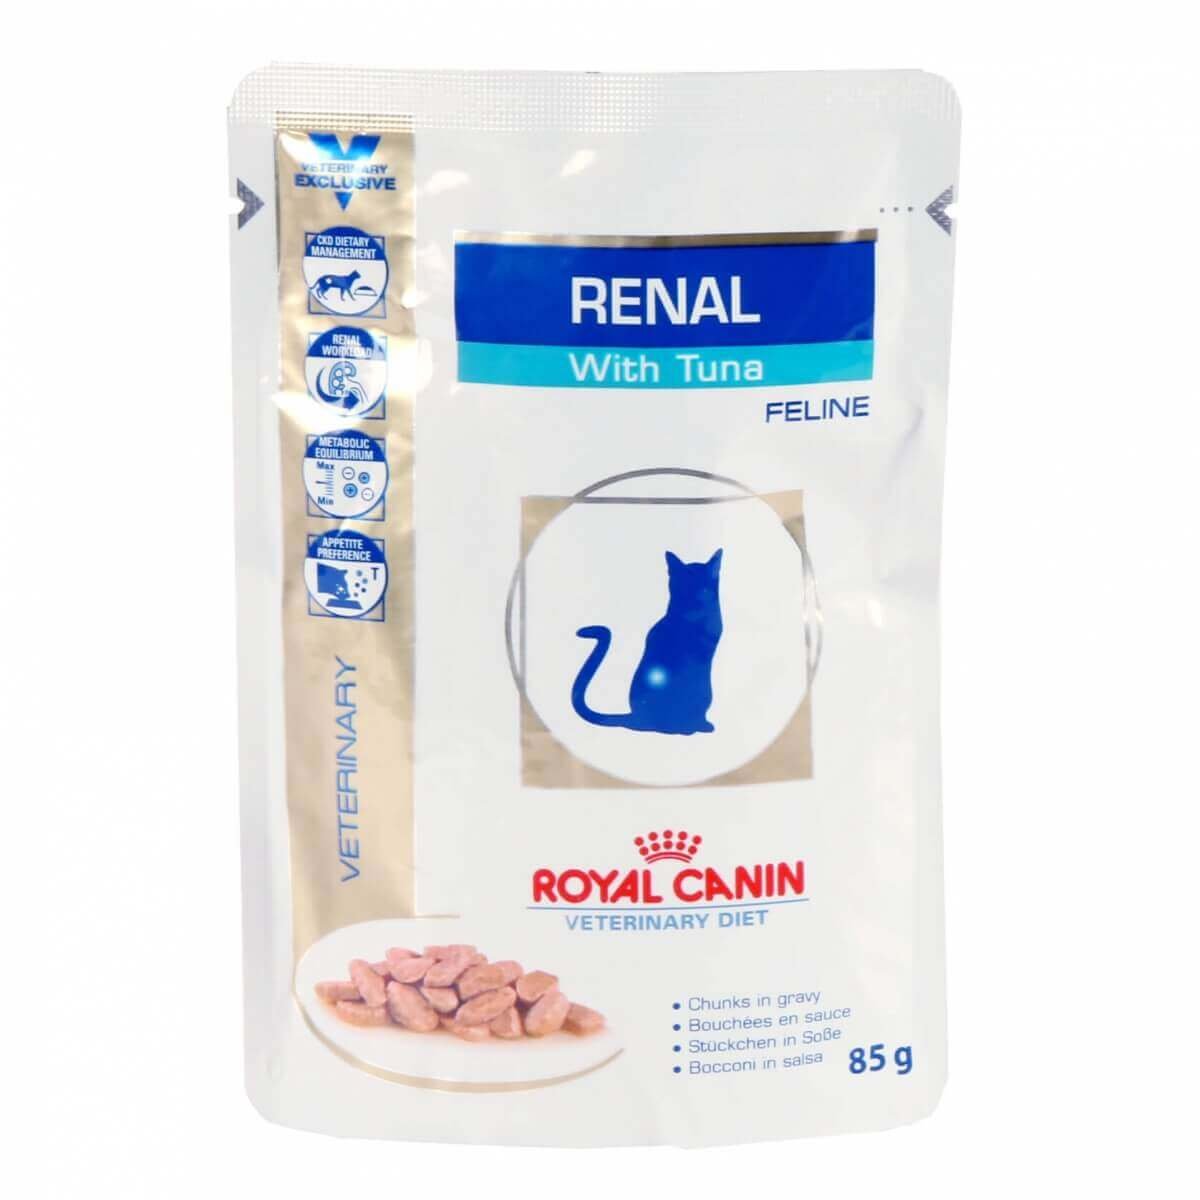 Royal Canin Veterinary Diet Feline Renal Confezione da 12 x 85g